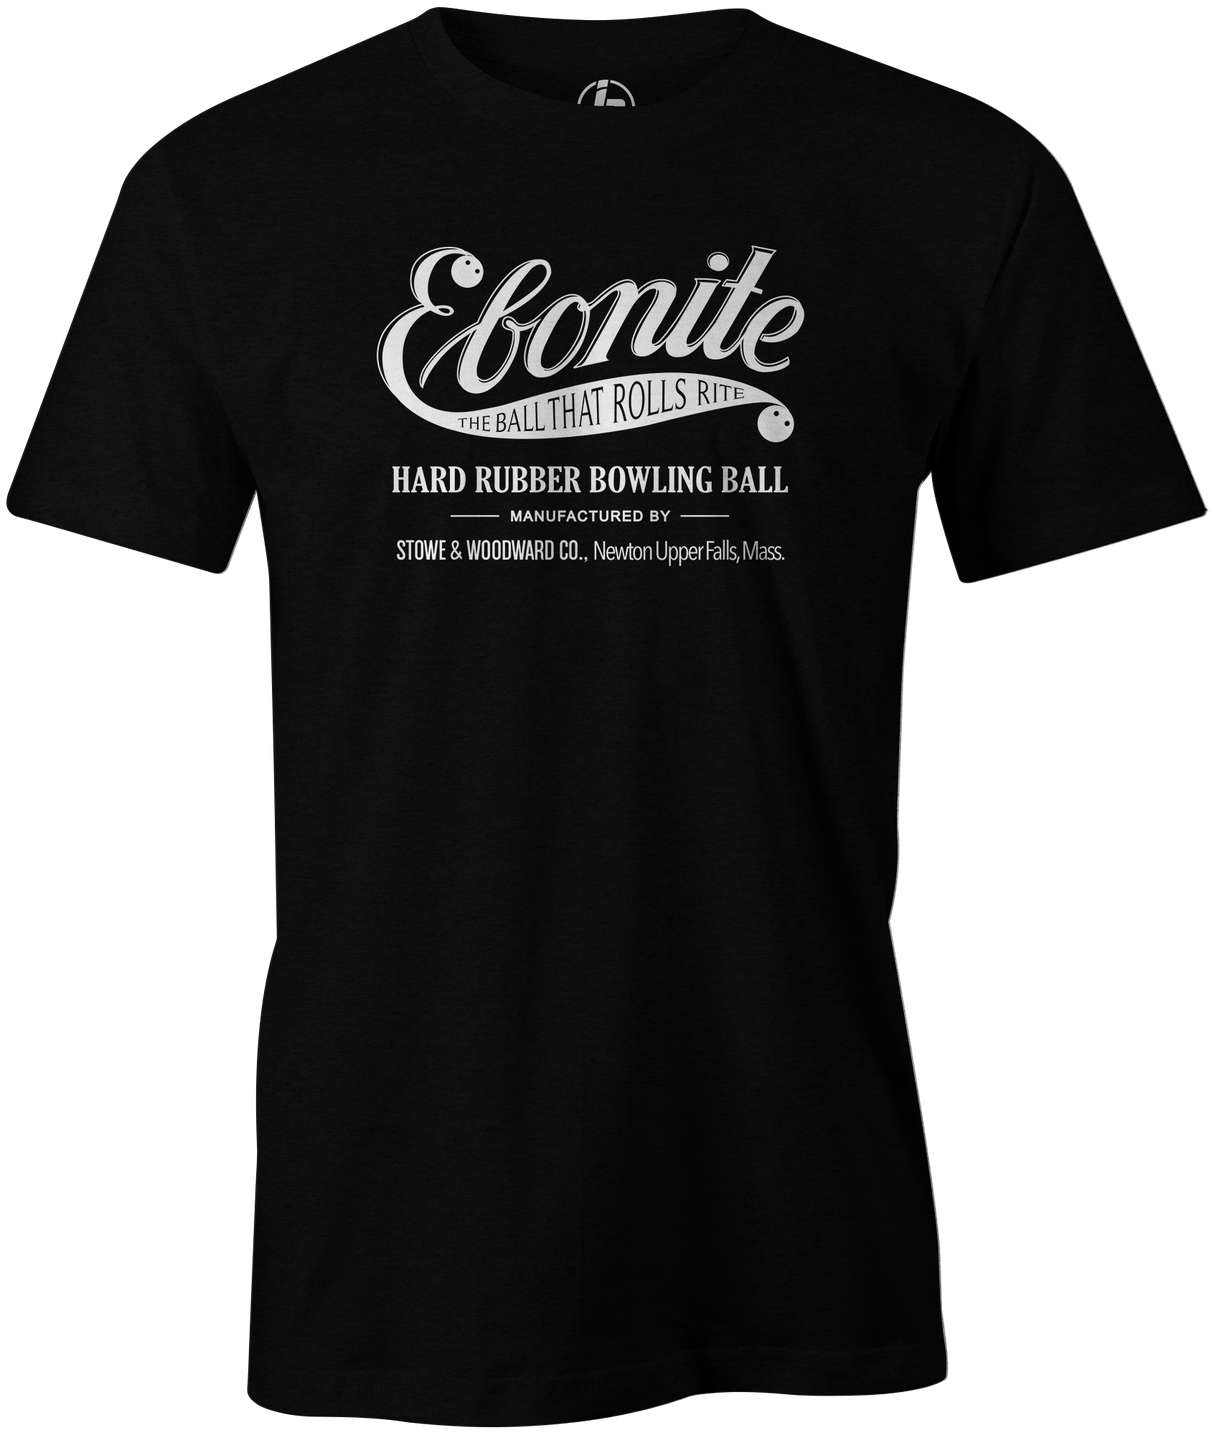 Ebonite Bowling T-Shirt Vintage Logo Black